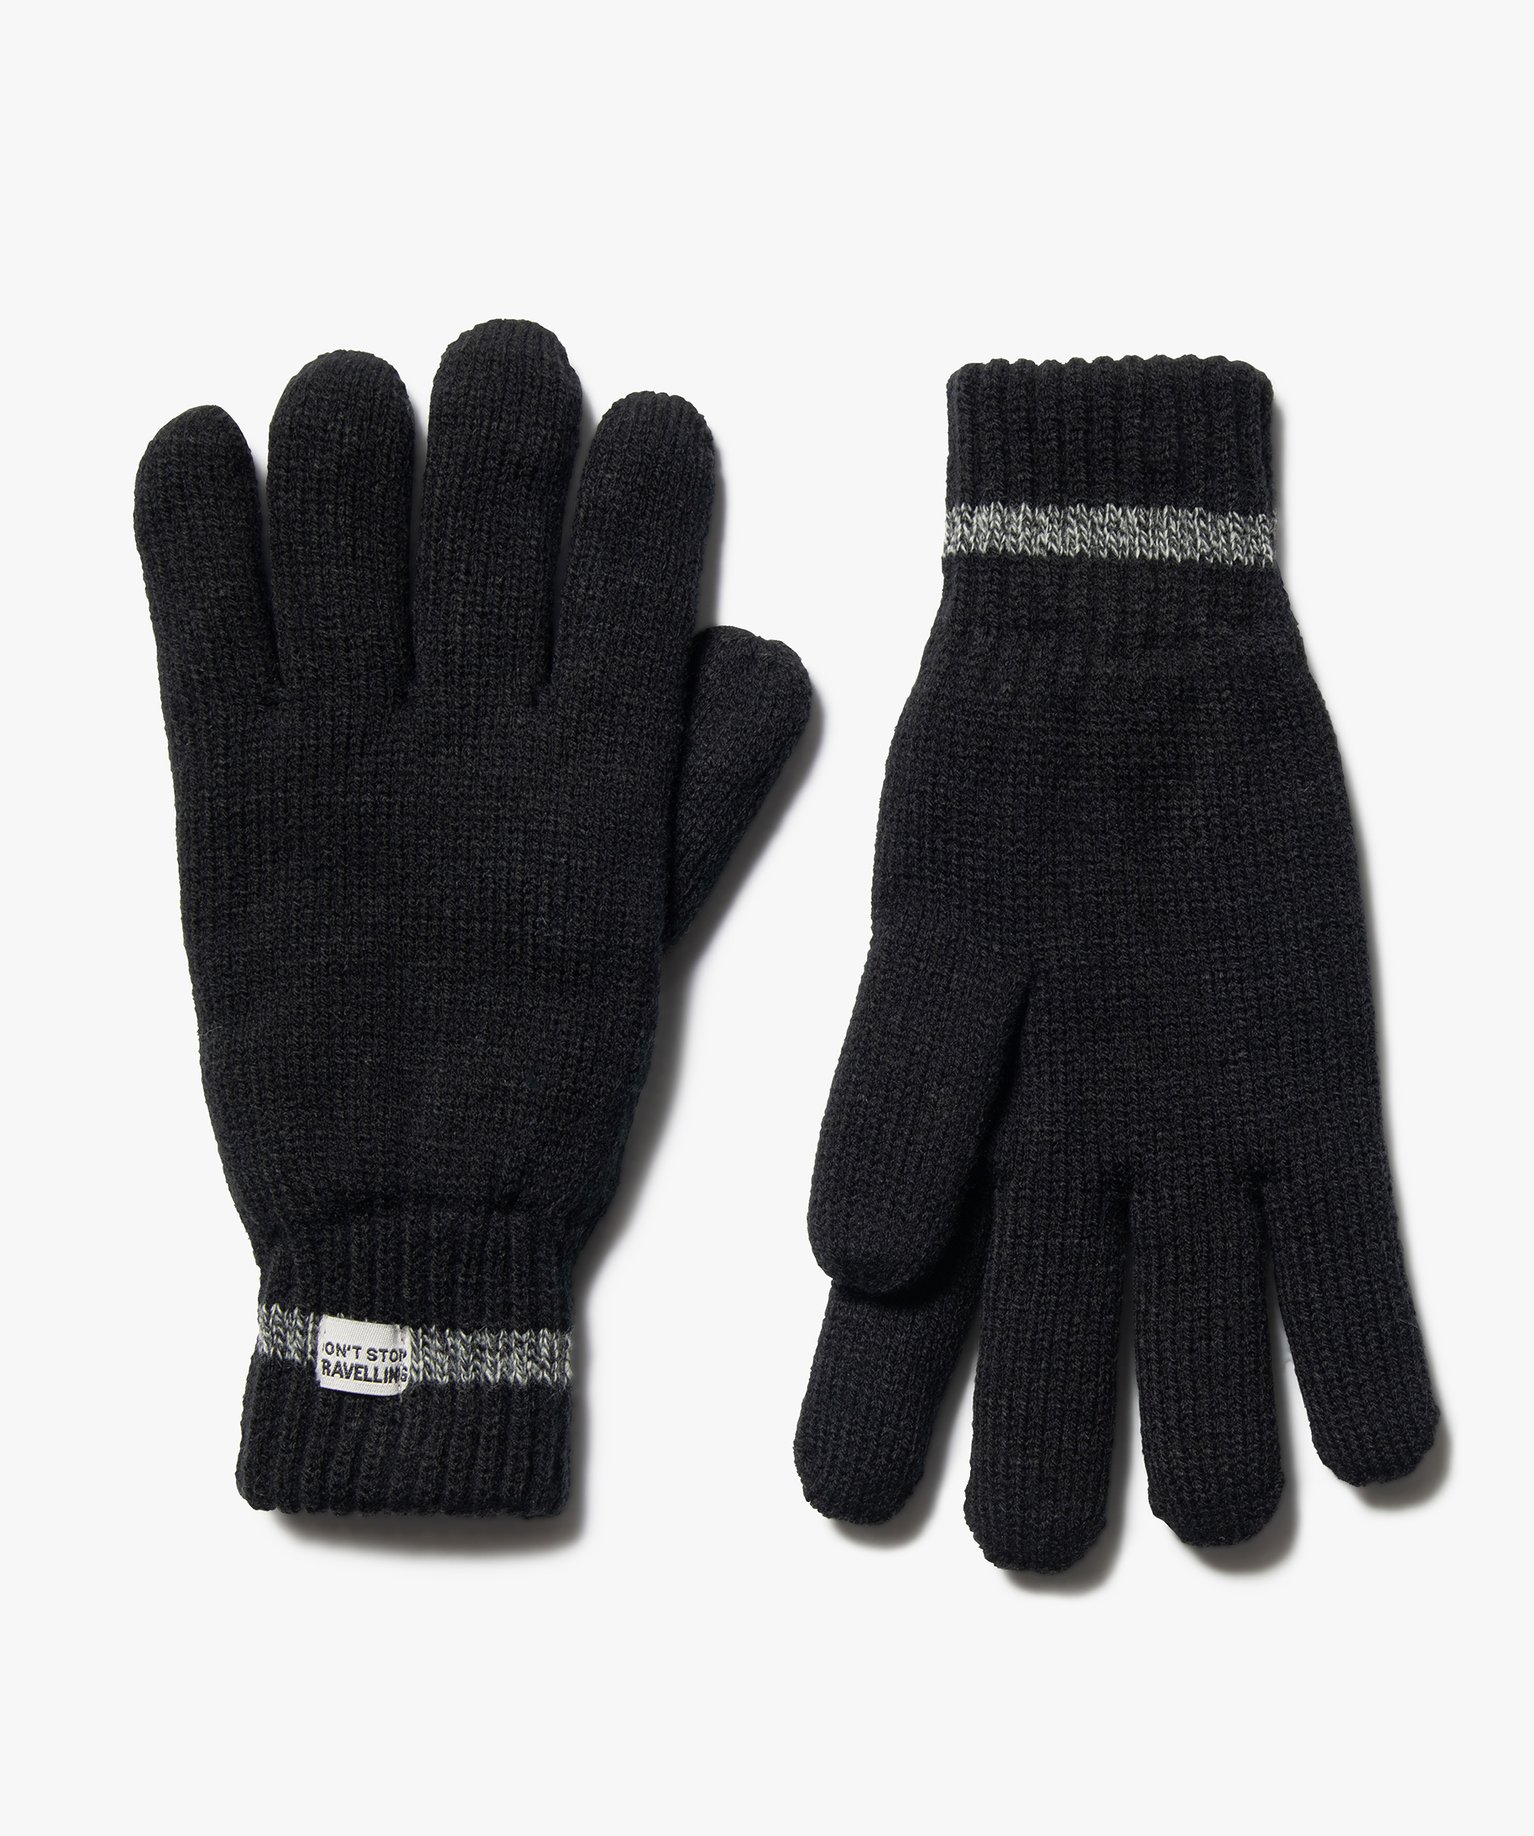 gants homme doublure polaire - 3m thinsulate noir homme